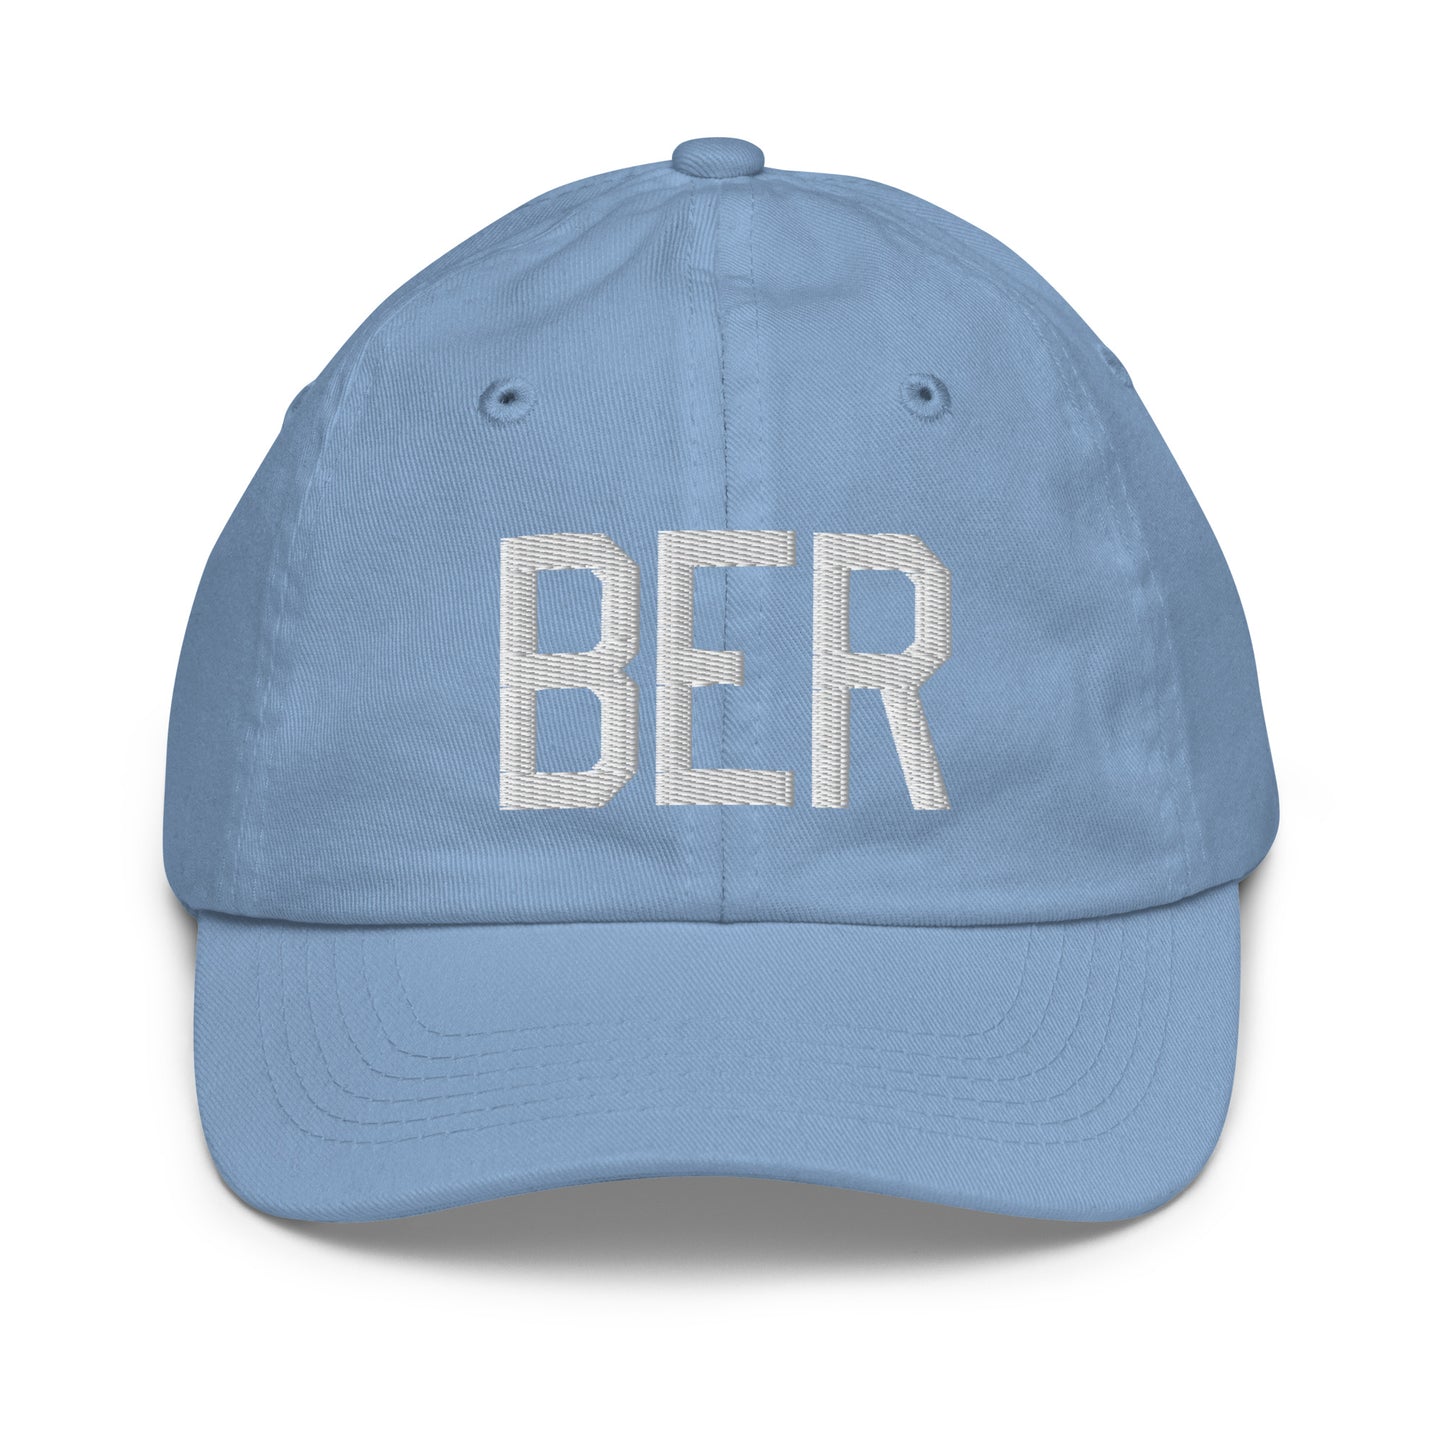 Airport Code Kid's Baseball Cap - White • BER Berlin • YHM Designs - Image 22